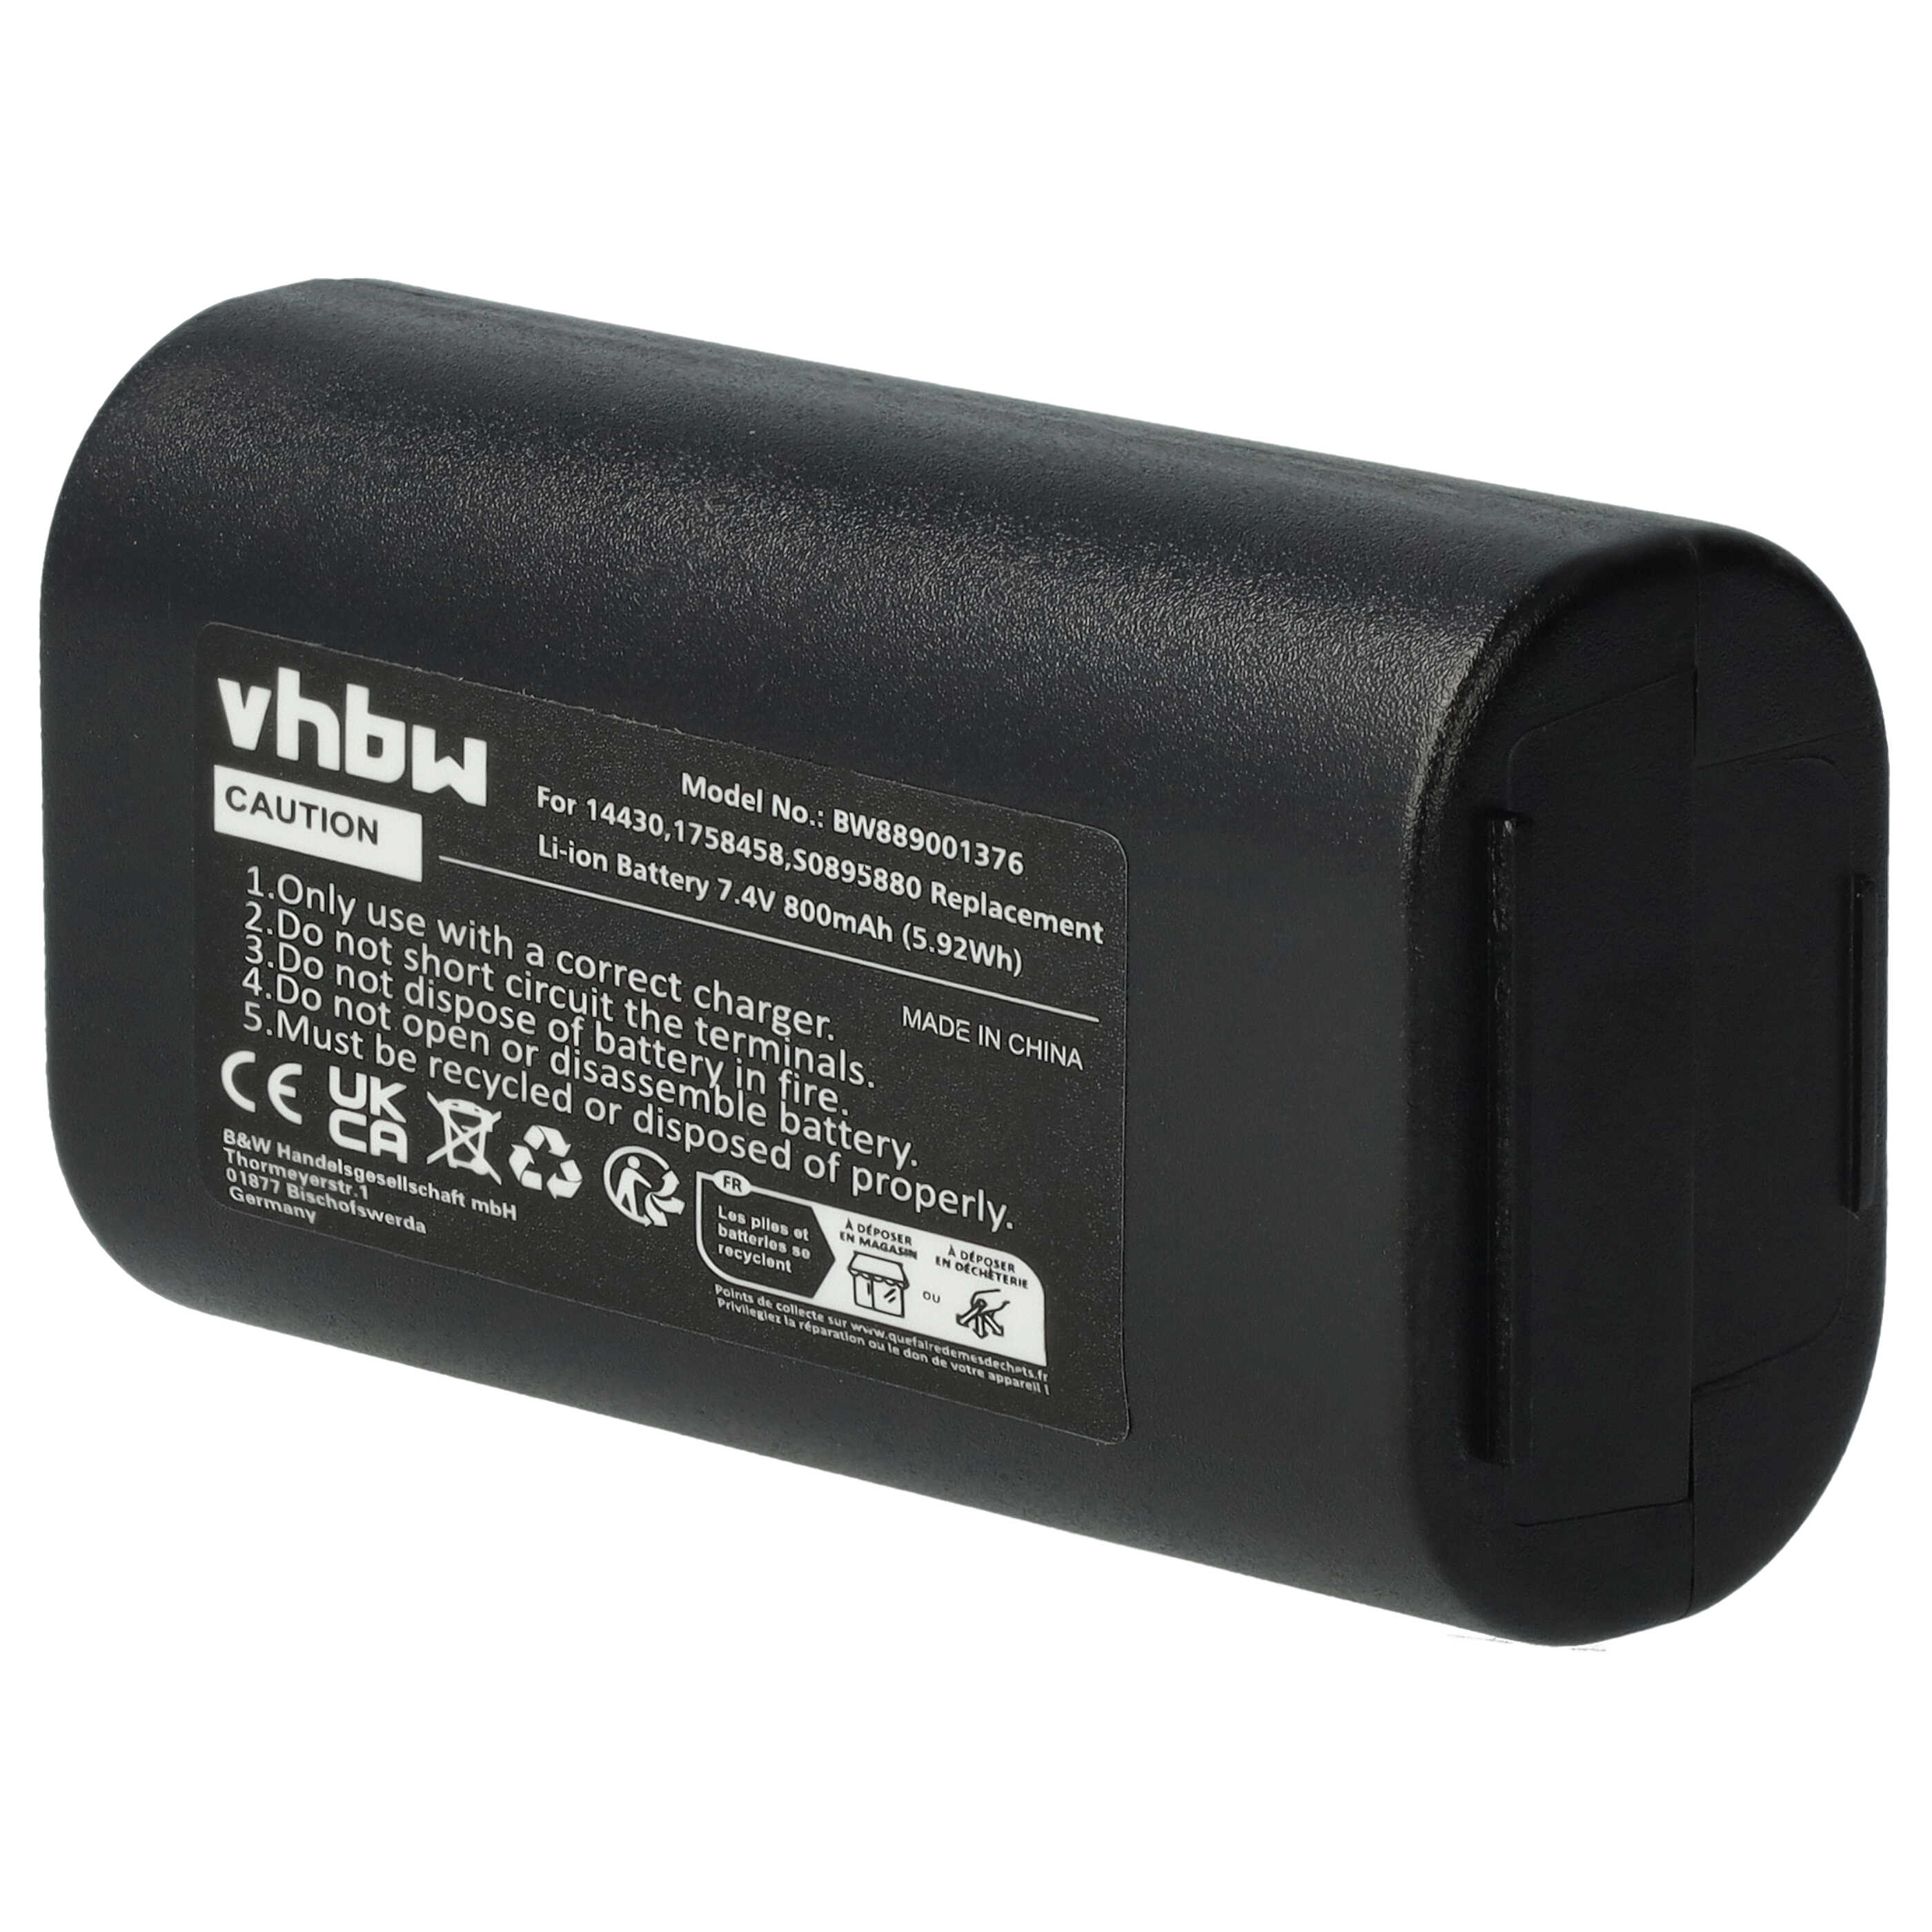 Batterie remplace 3M W003688, S0895880 pour imprimante - 800mAh 7,4V Li-ion